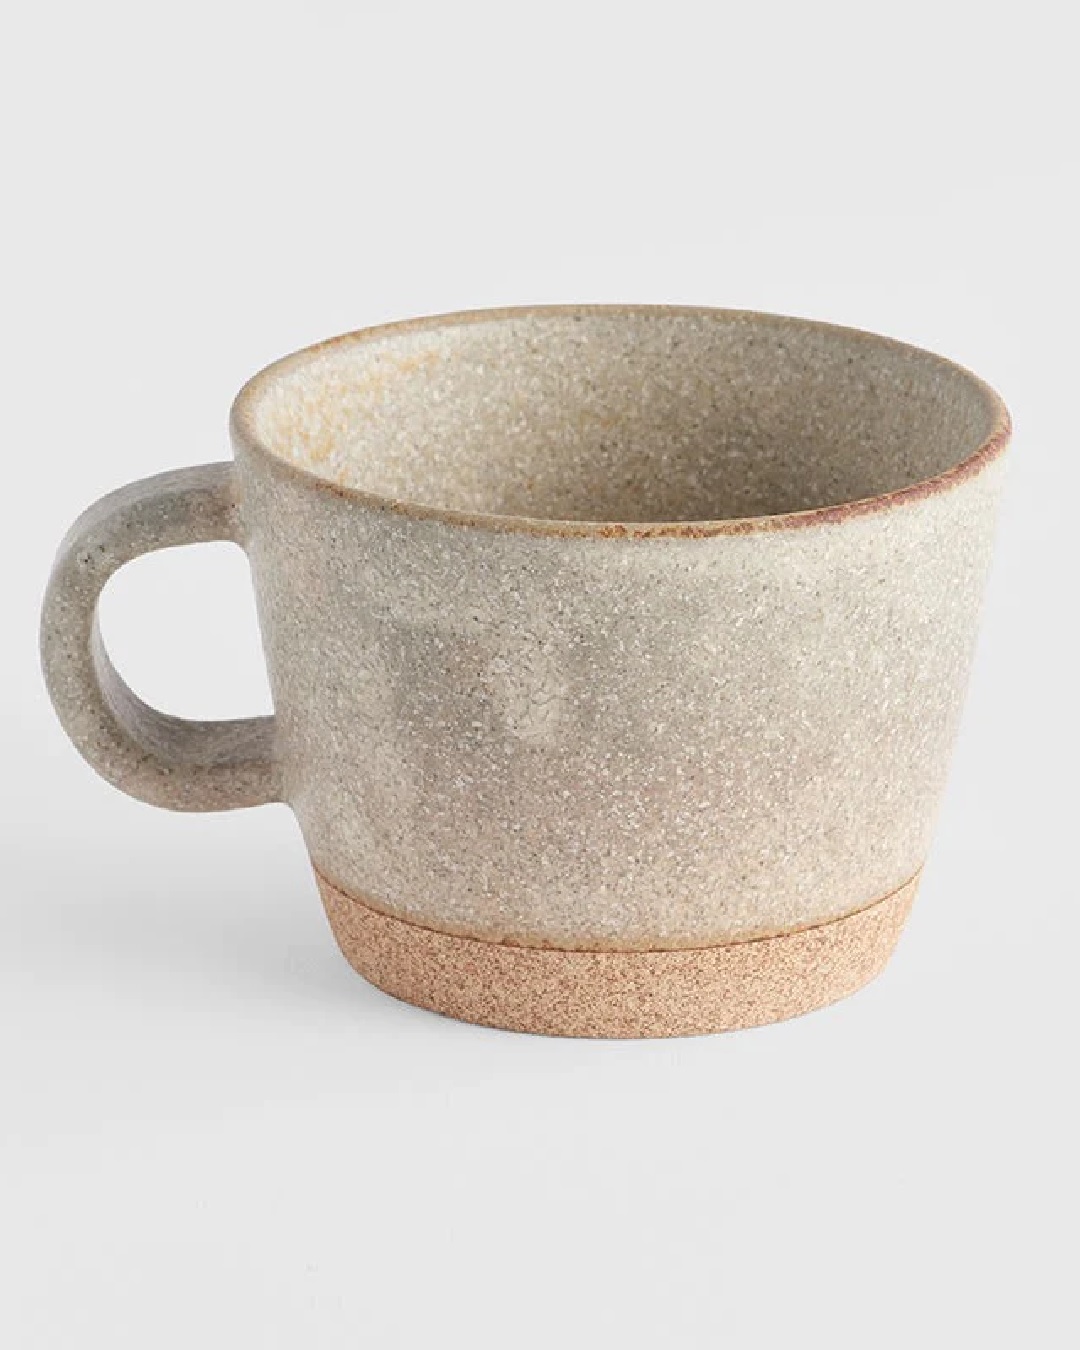 Sandy grey mug with handle